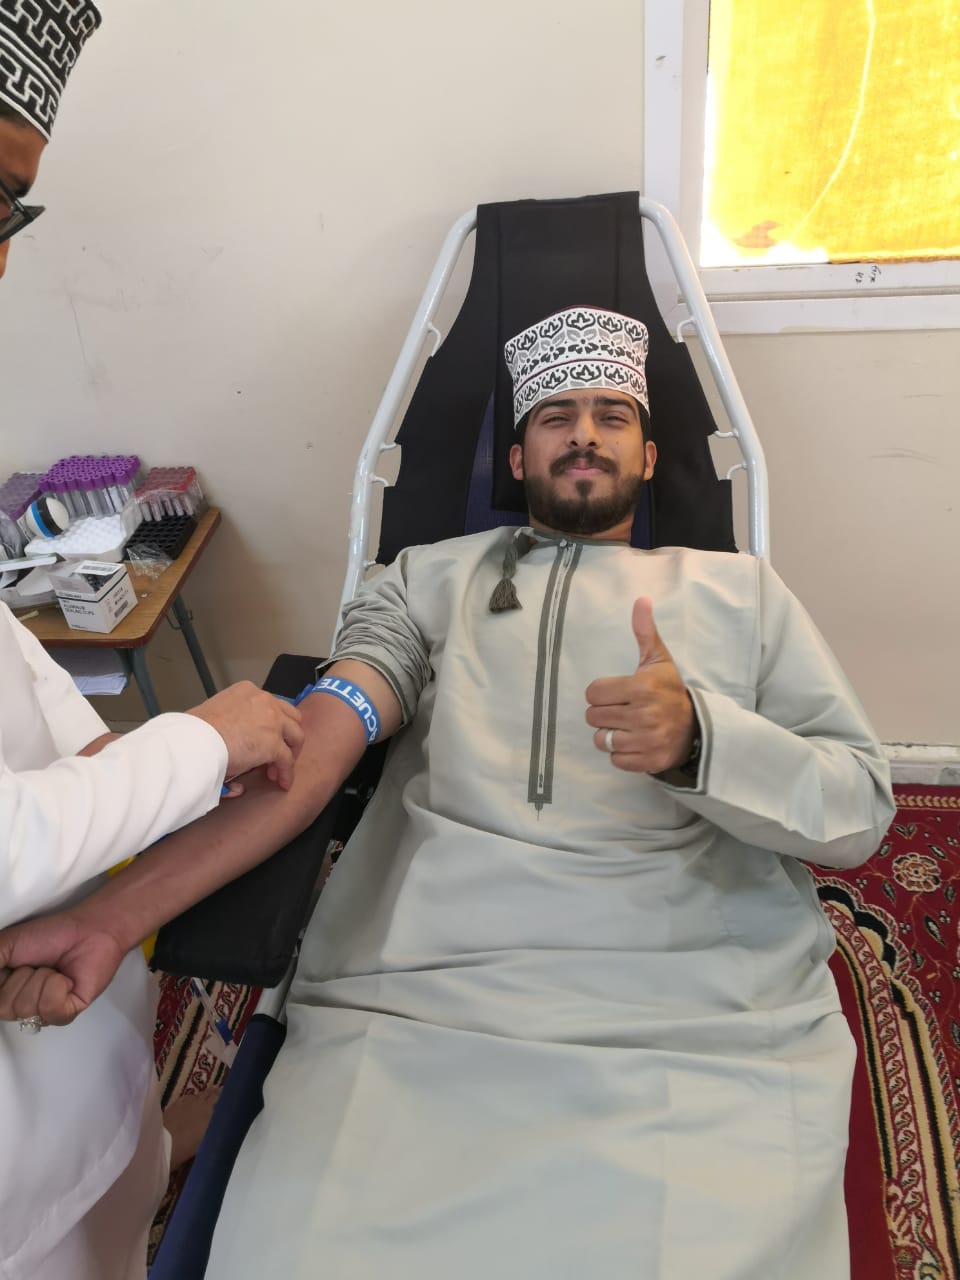 فريق بنك الدم التابع لمستشفى الرستاق بالتعاون مع أهالي بلدة الشبيكة بولاية الرستاق ينظم حملة للتبرع بالدم